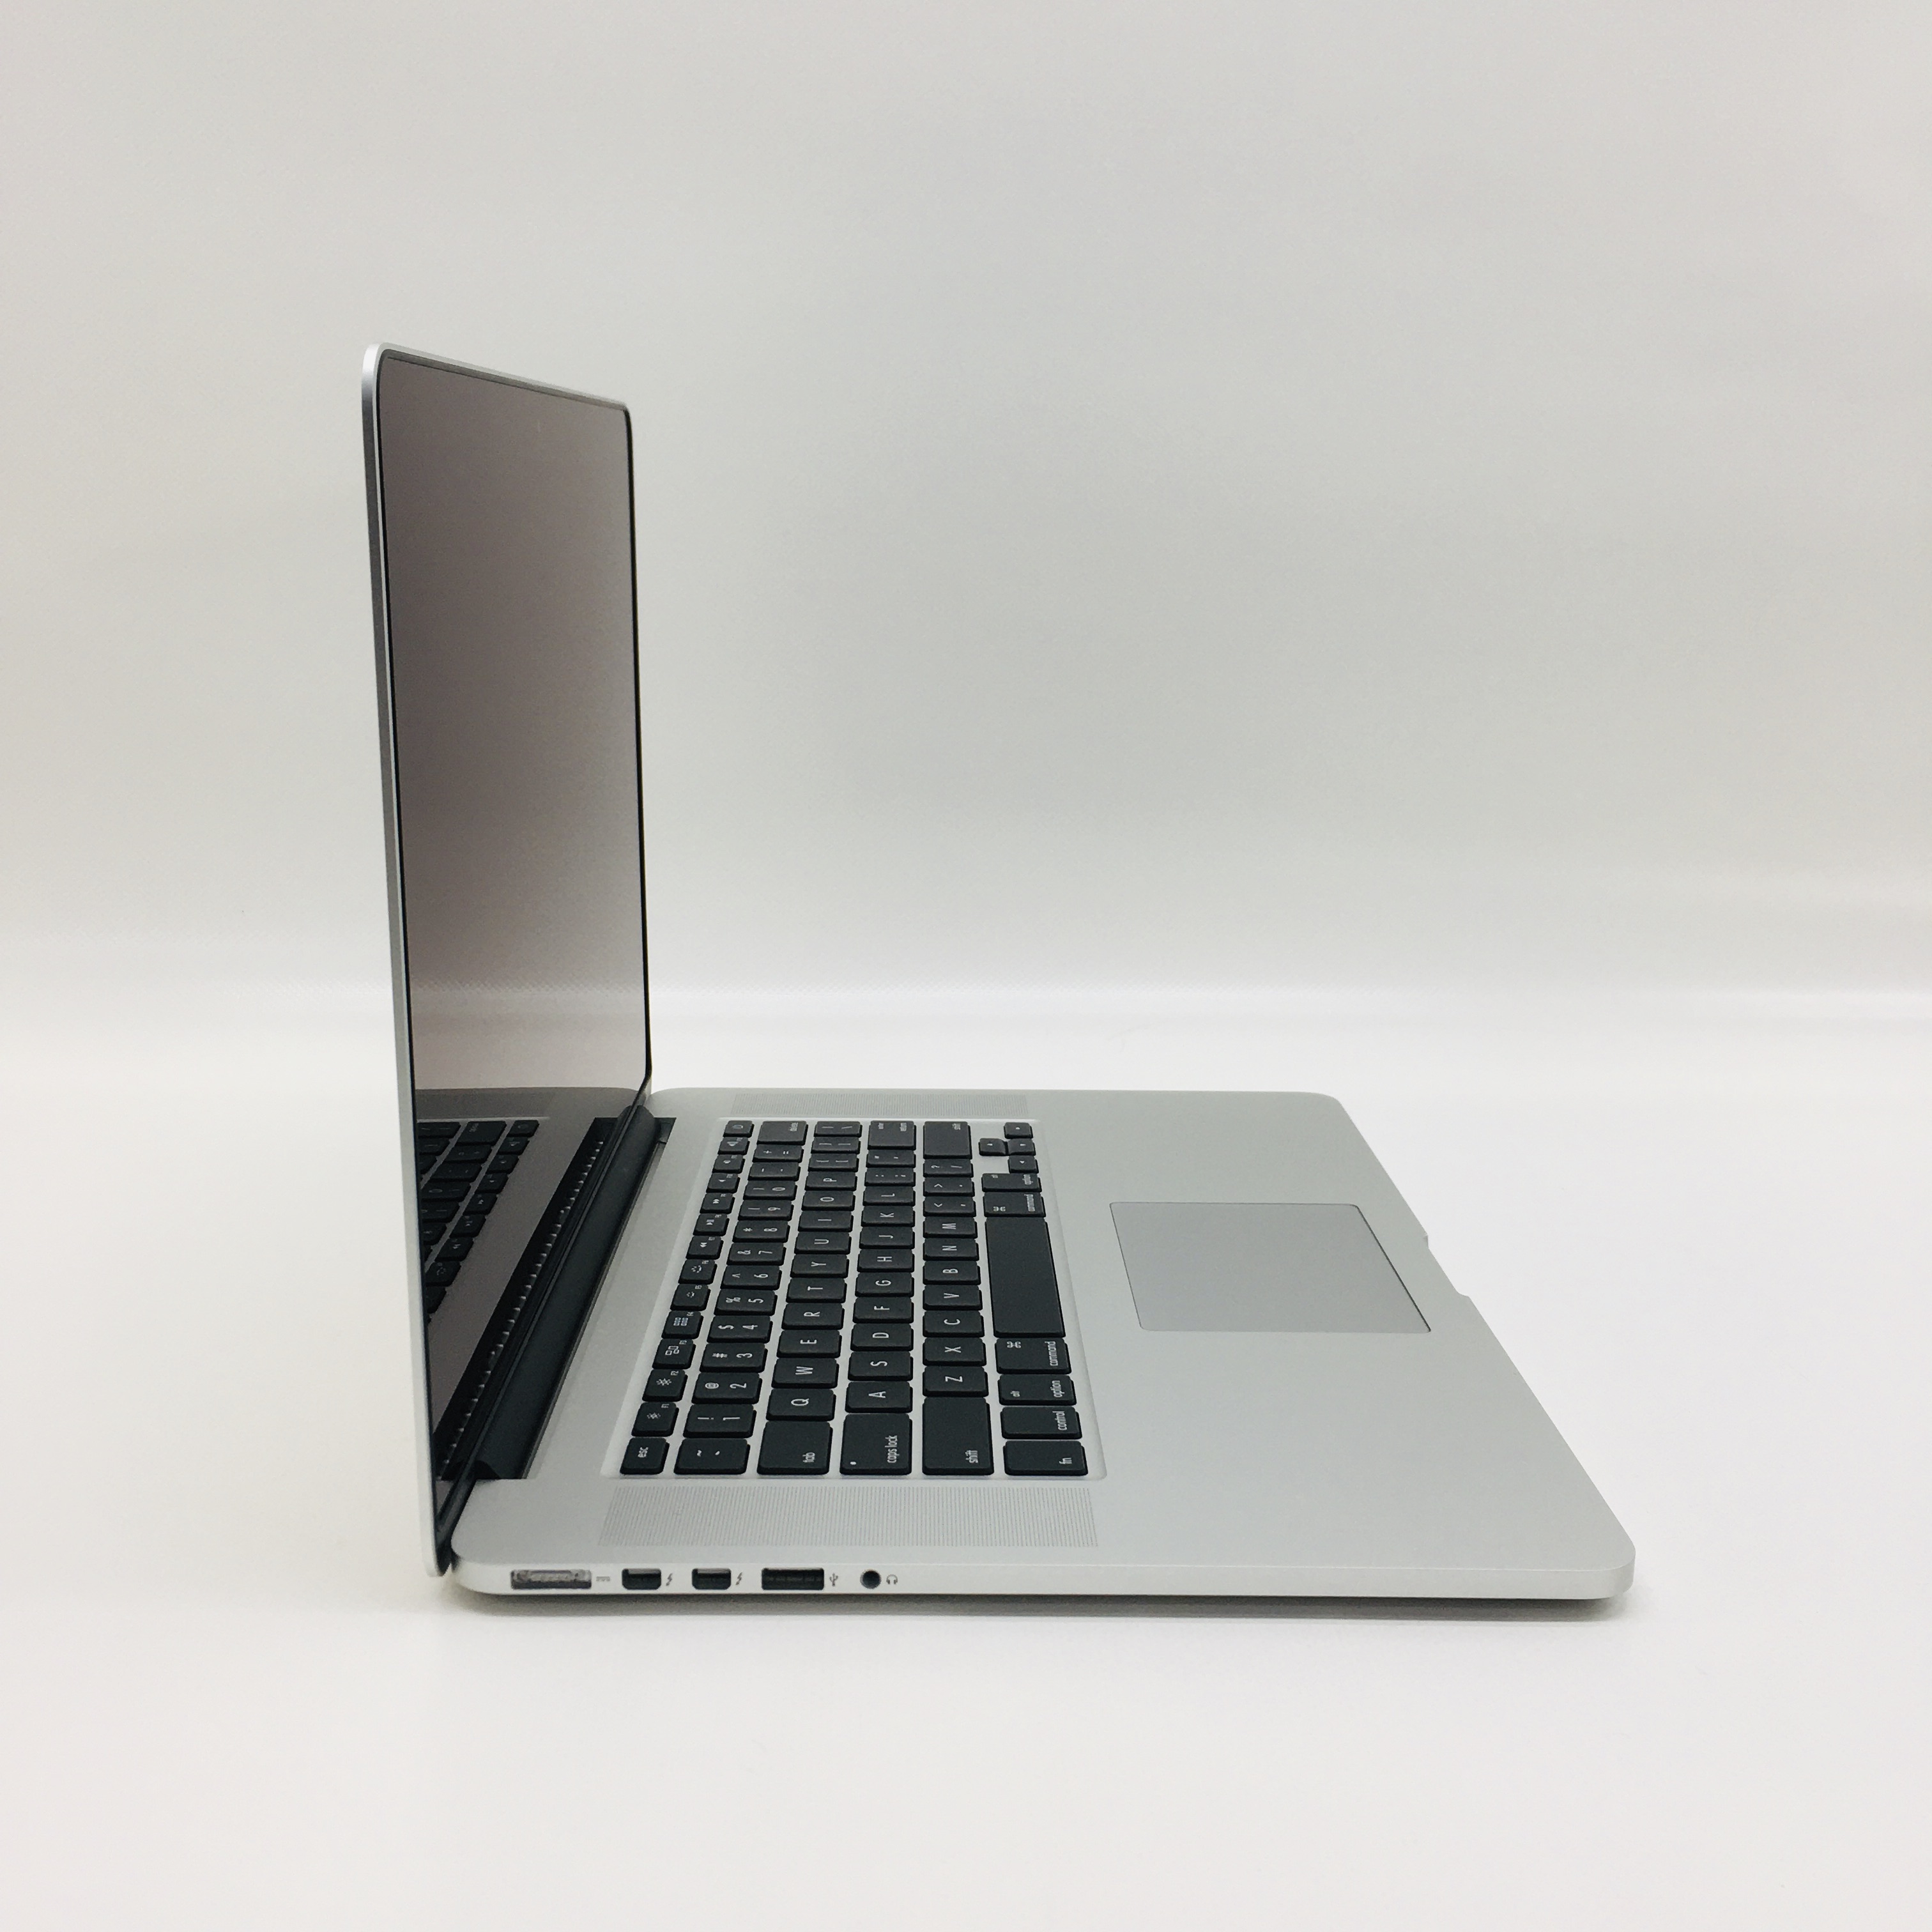 MacBook Pro Retina 15" Mid 2015 (Intel Quad-Core i7 2.5 GHz 16 GB RAM 512 GB SSD), Intel Quad-Core i7 2.5 GHz, 16 GB RAM, 512 GB SSD, image 2